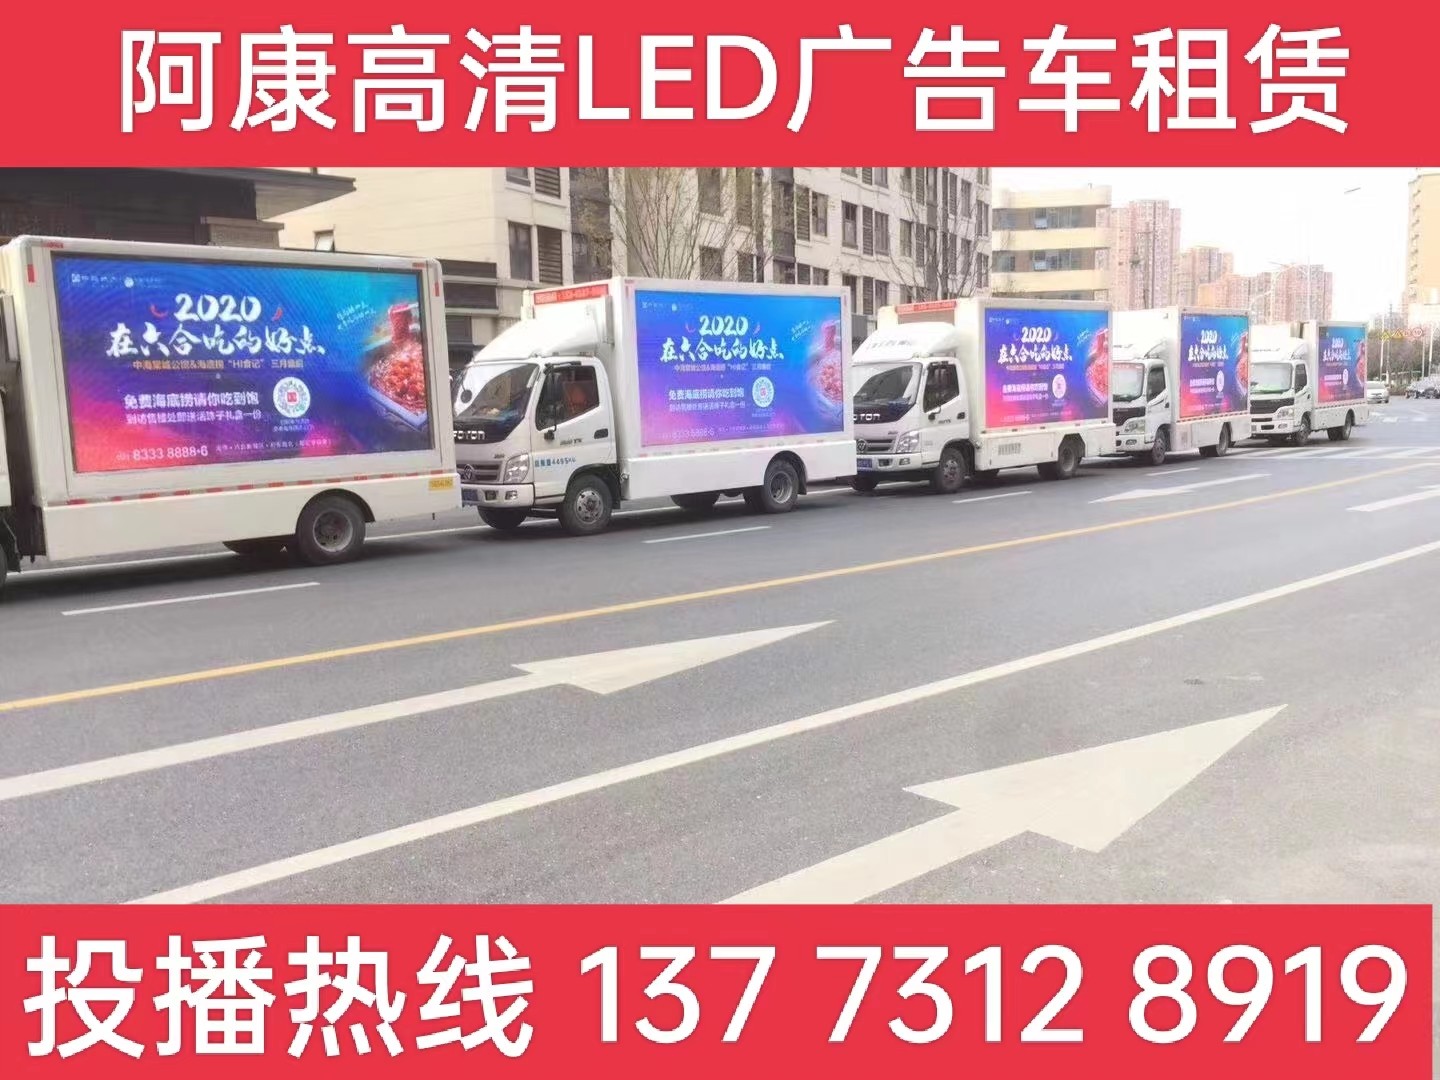 高港区宣传车出租-海底捞LED广告